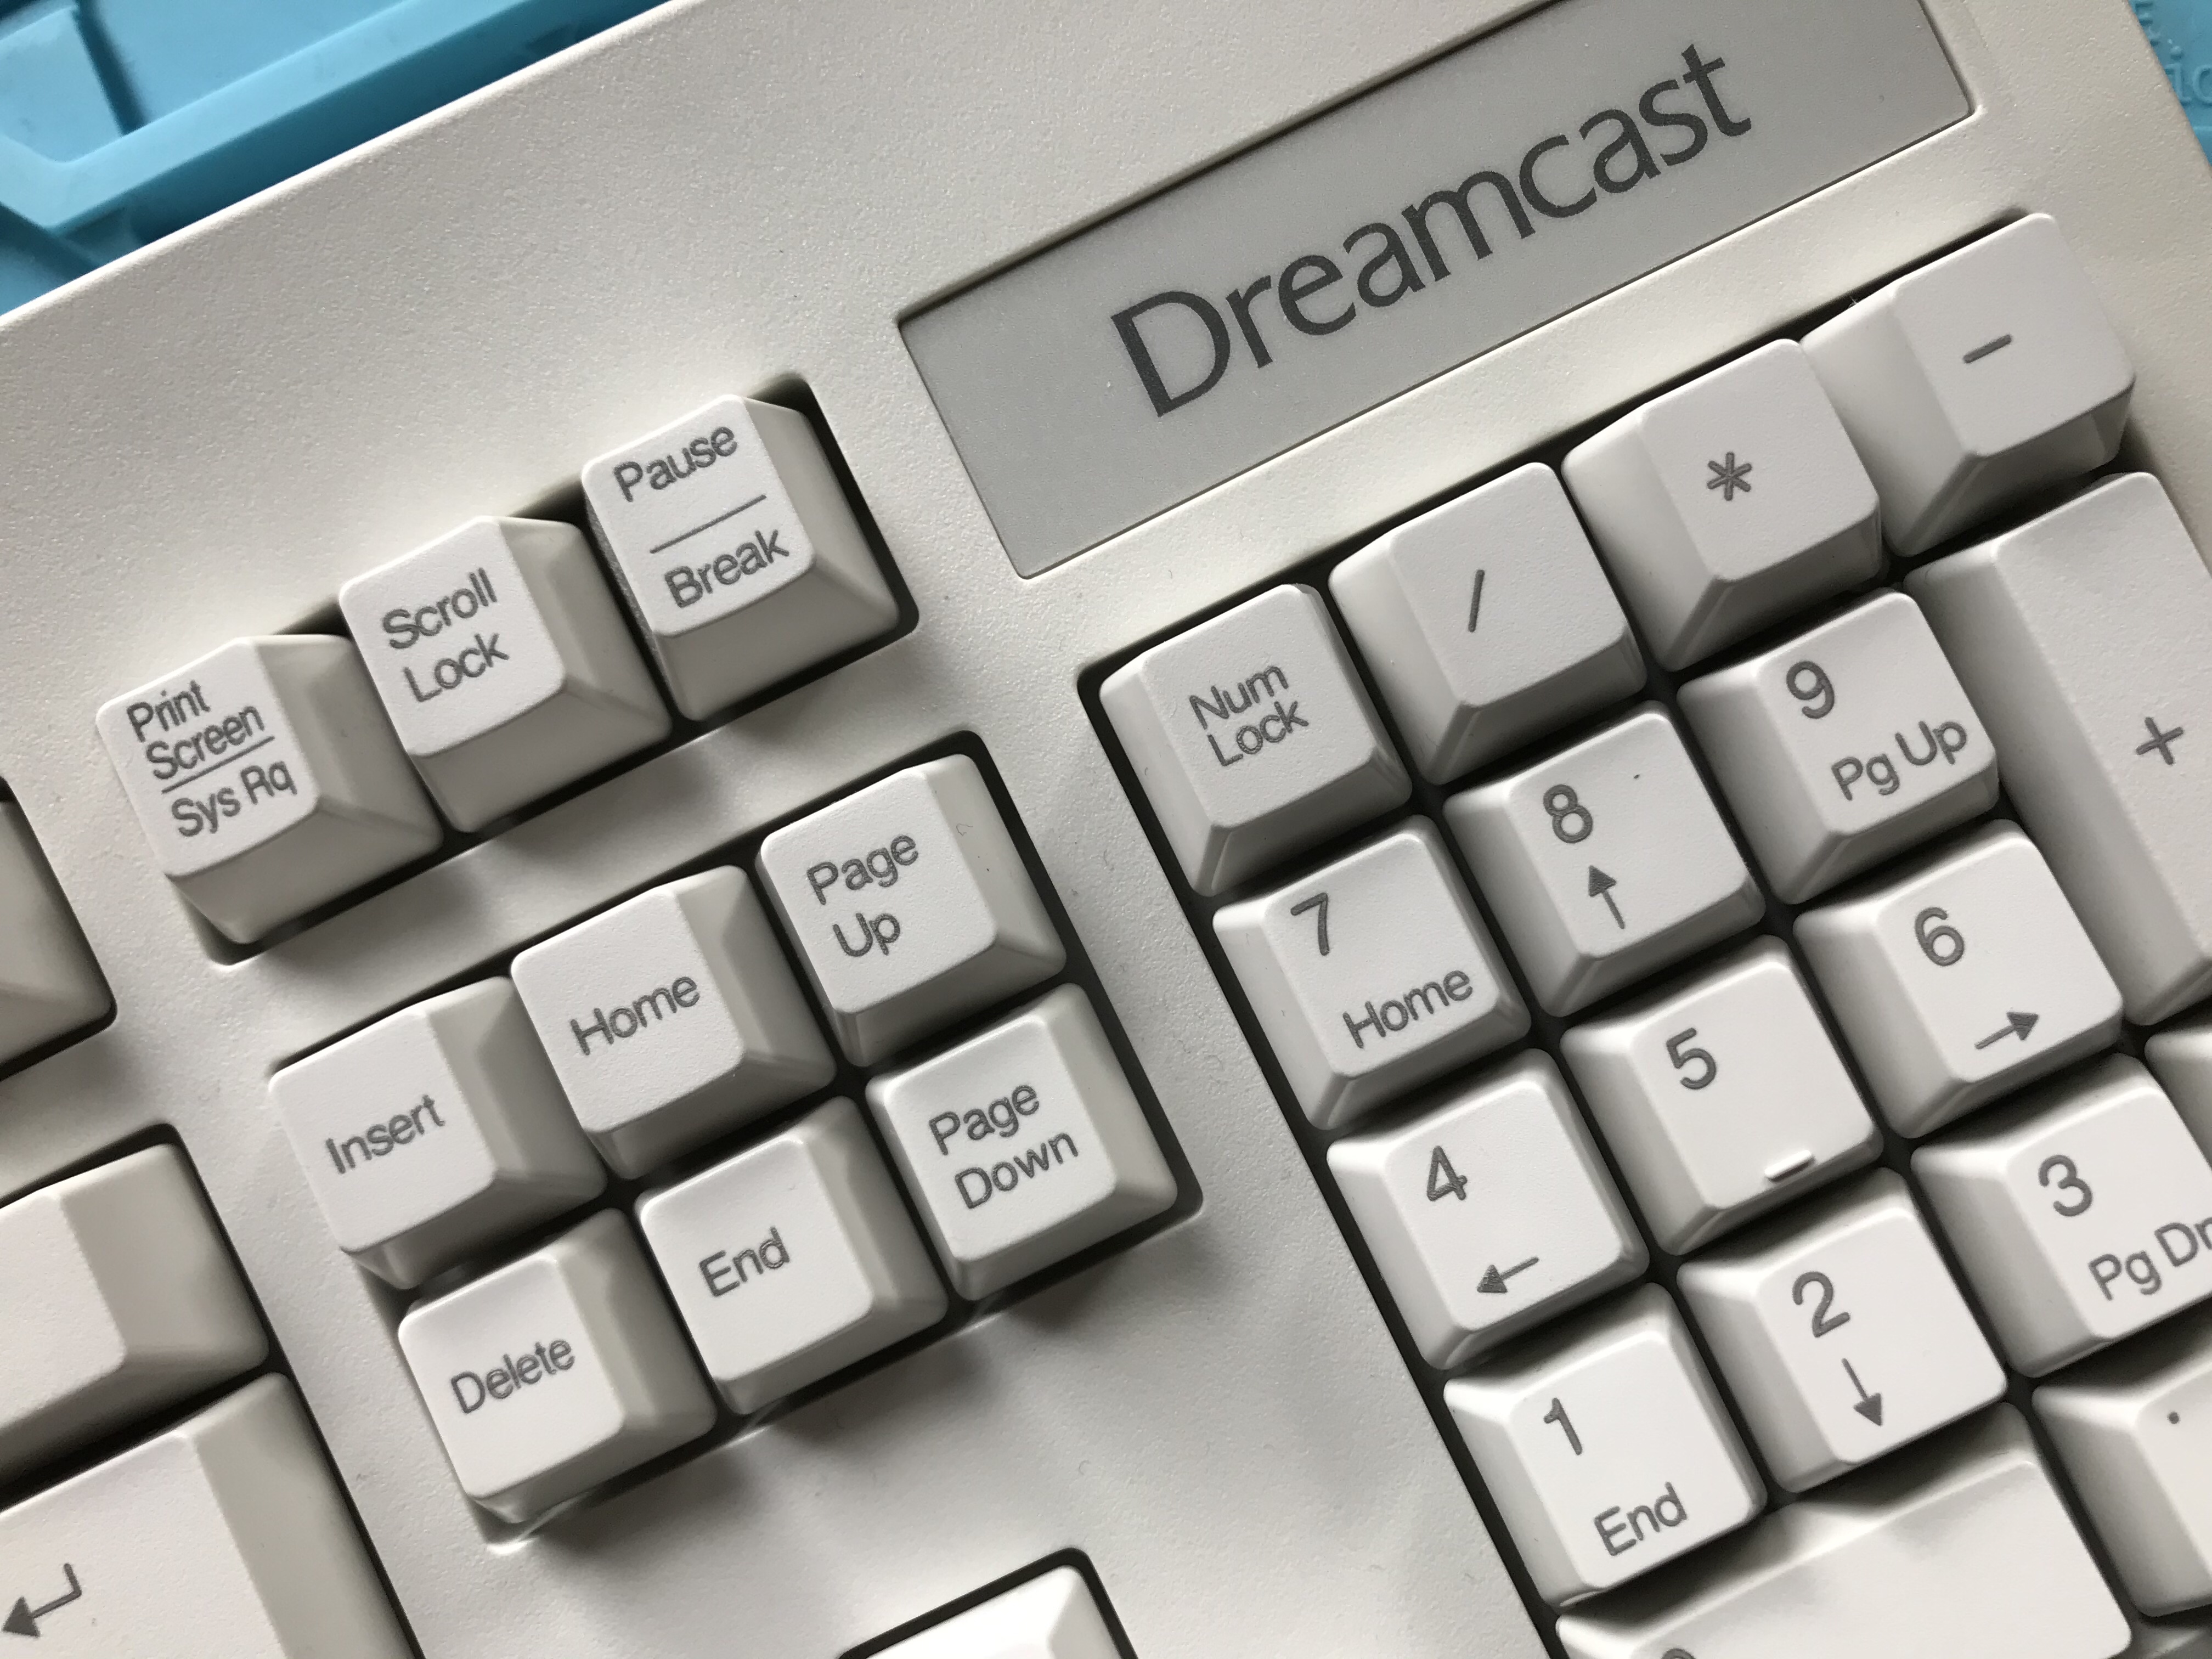 Dreamcast keyboard